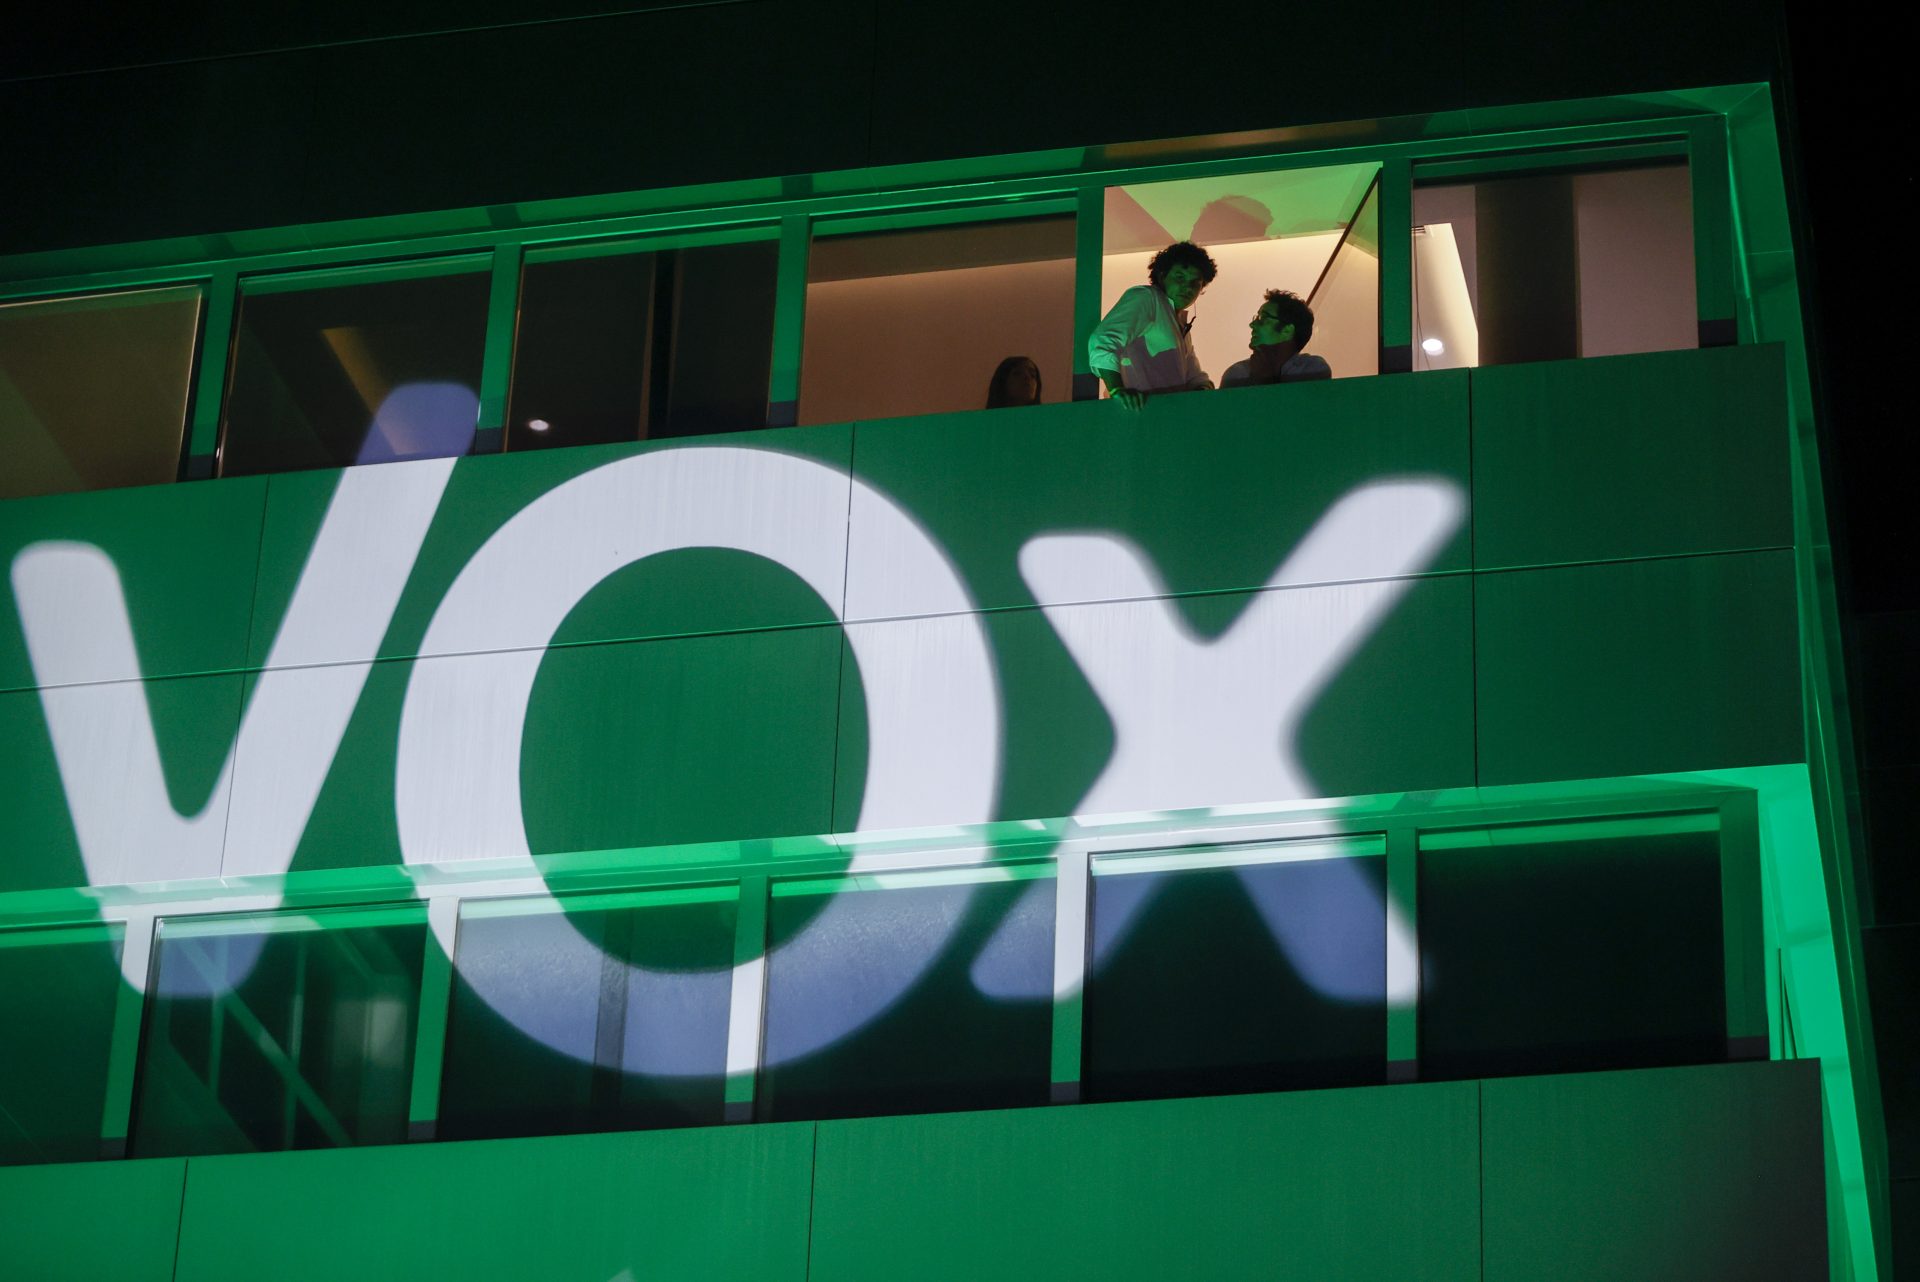 La Junta Electoral ve falta de “neutralidad” en un reportaje de TV3 sobre Vox